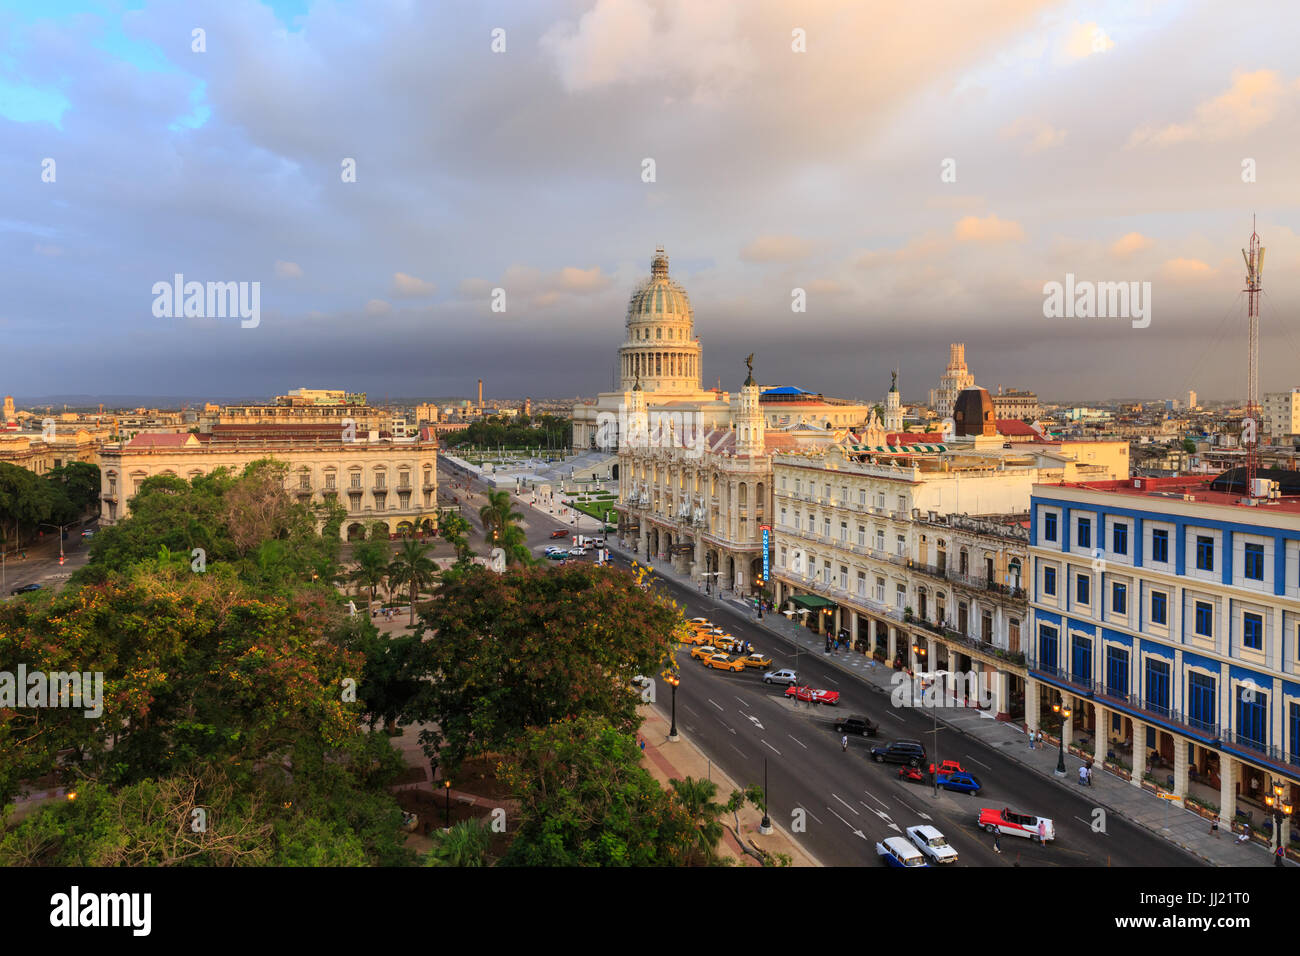 Evening view of El Capitolio, Gran Teatro de la Habana, Parque Central and La Habana Vieja, Old Havana, Cuba Stock Photo